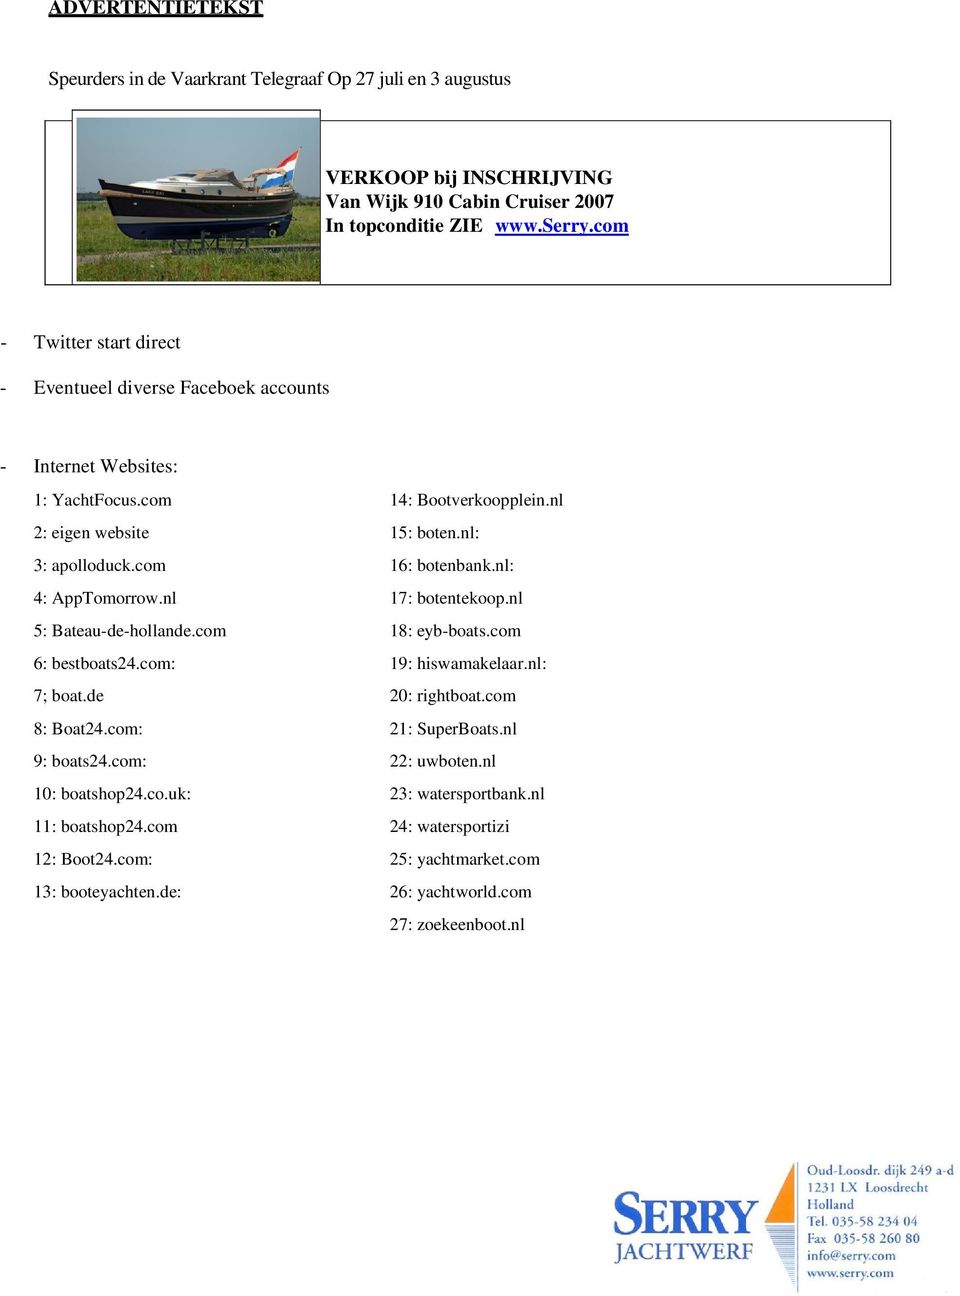 com 16: botenbank.nl: 4: AppTomorrow.nl 17: botentekoop.nl 5: Bateau-de-hollande.com 18: eyb-boats.com 6: bestboats24.com: 19: hiswamakelaar.nl: 7; boat.de 20: rightboat.com 8: Boat24.